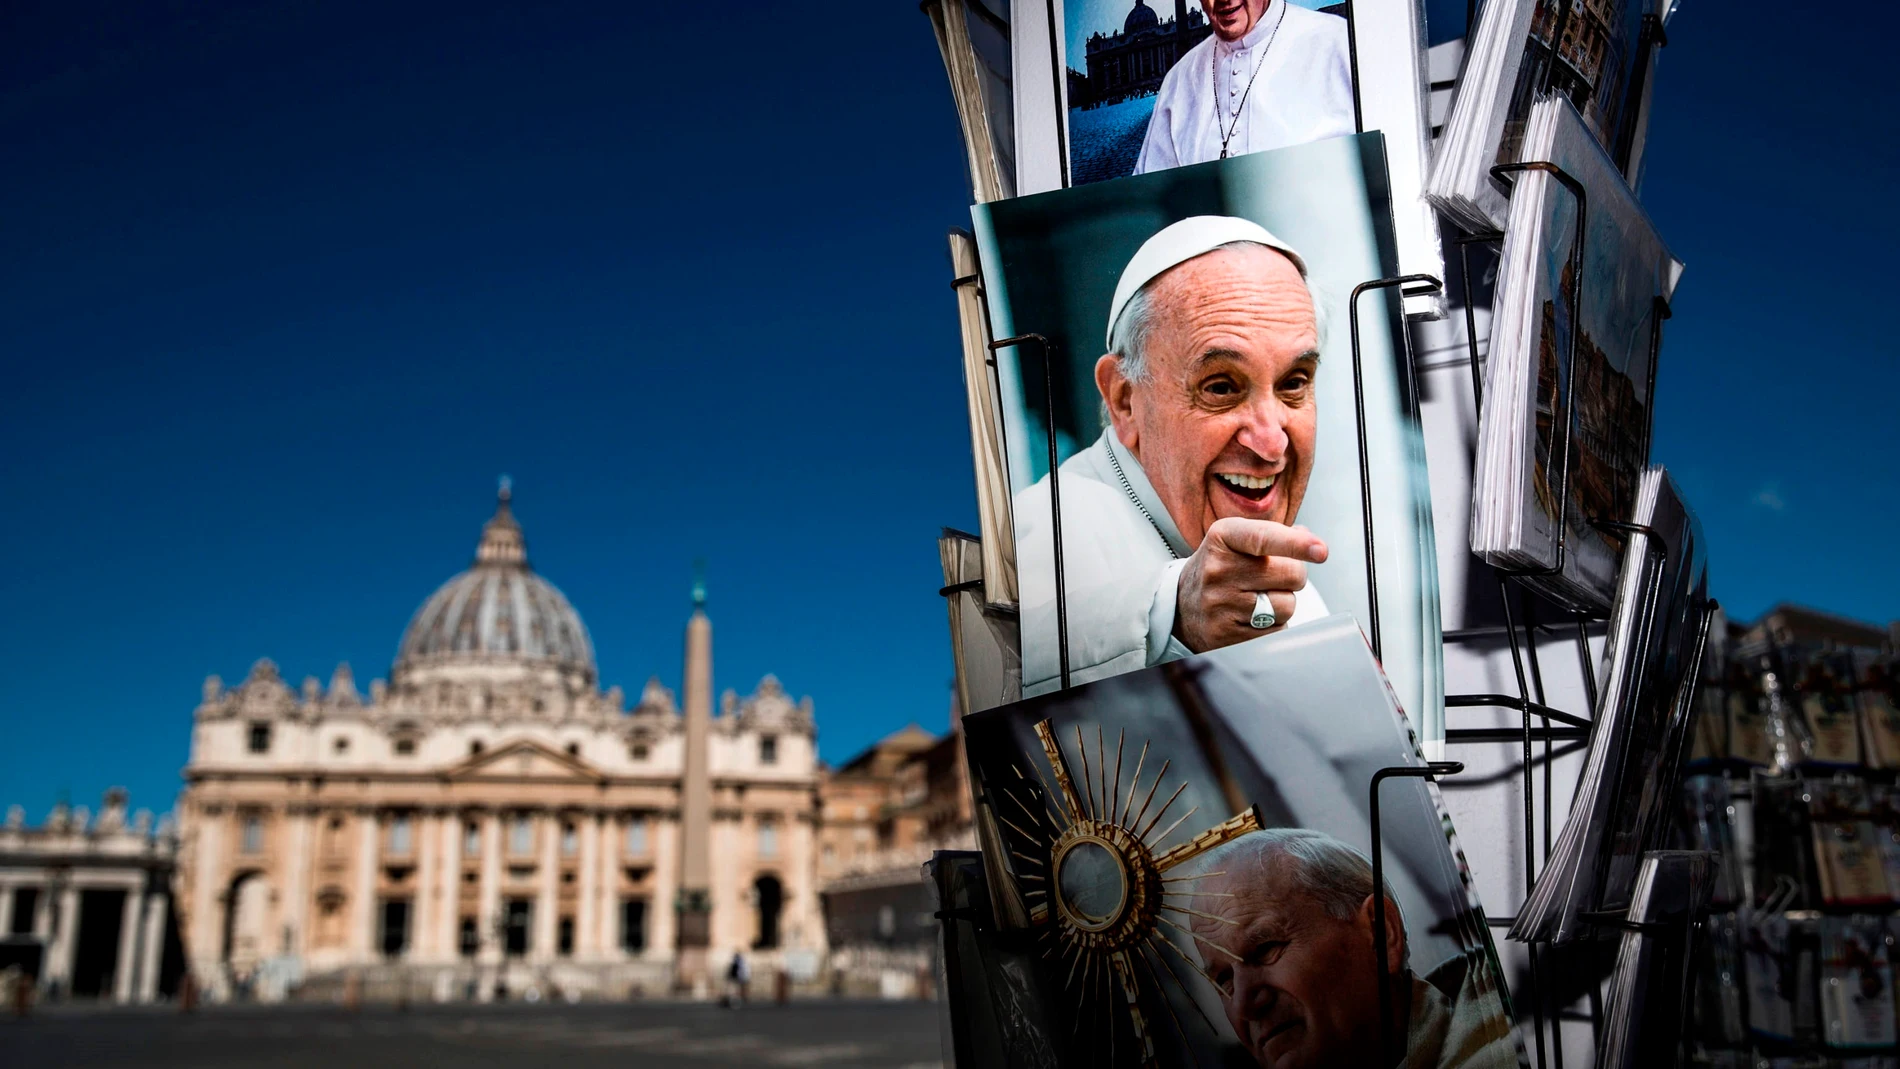 Fotos del Papa Francisco en la Plaza de San Pedro el día después de que su operación de colon